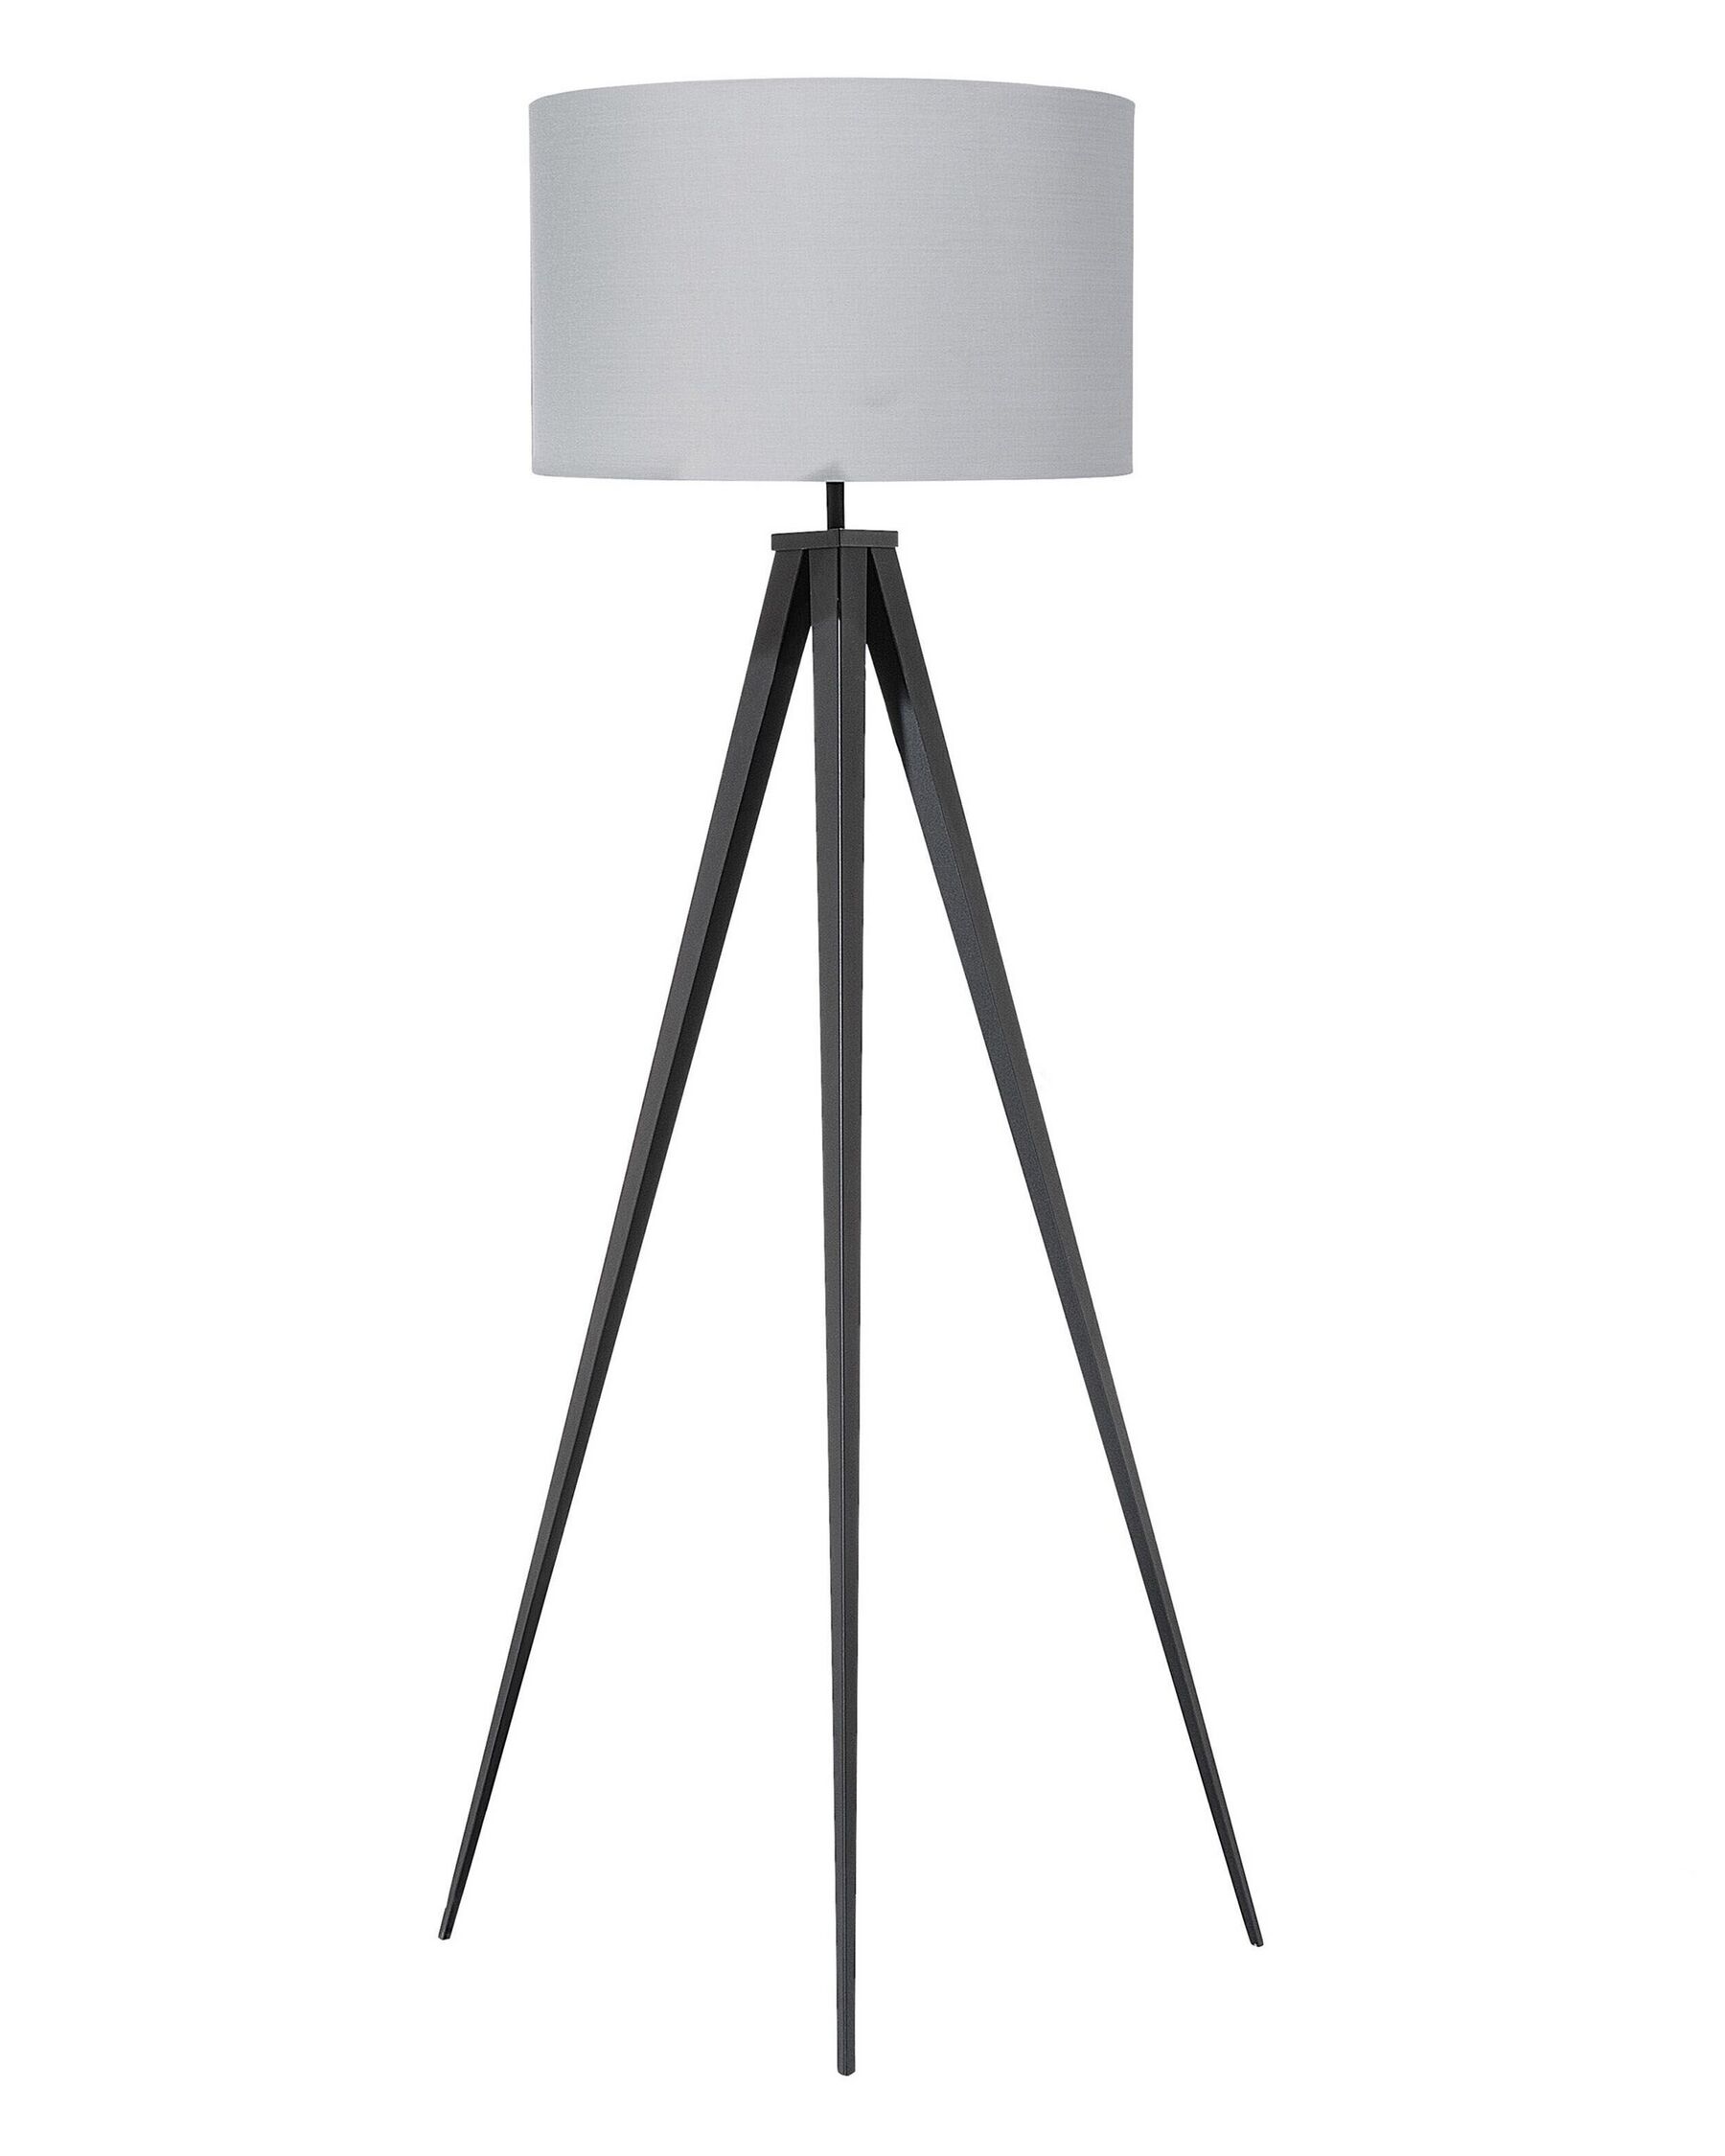 Stehleuchte Stehlampe Polyester/Metall hellgrau 156 cm Trommelform Stiletto